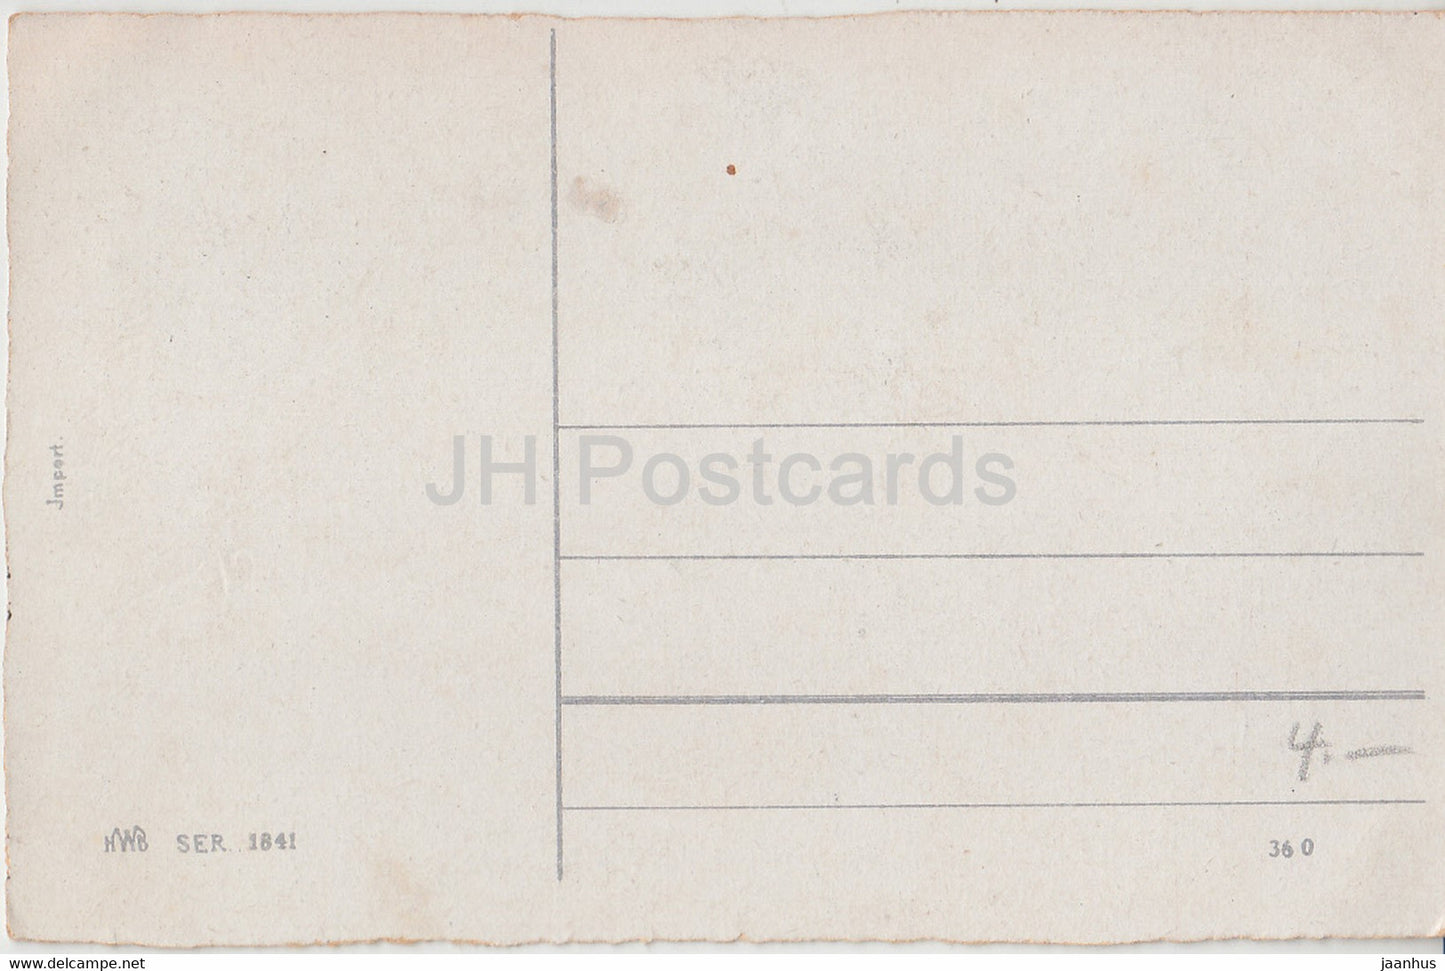 Pfingstgrußkarte - Herzliche Pfingstgrusse - Birke - Boot - HWB SER 1841 - alte Postkarte - Deutschland - unbenutzt